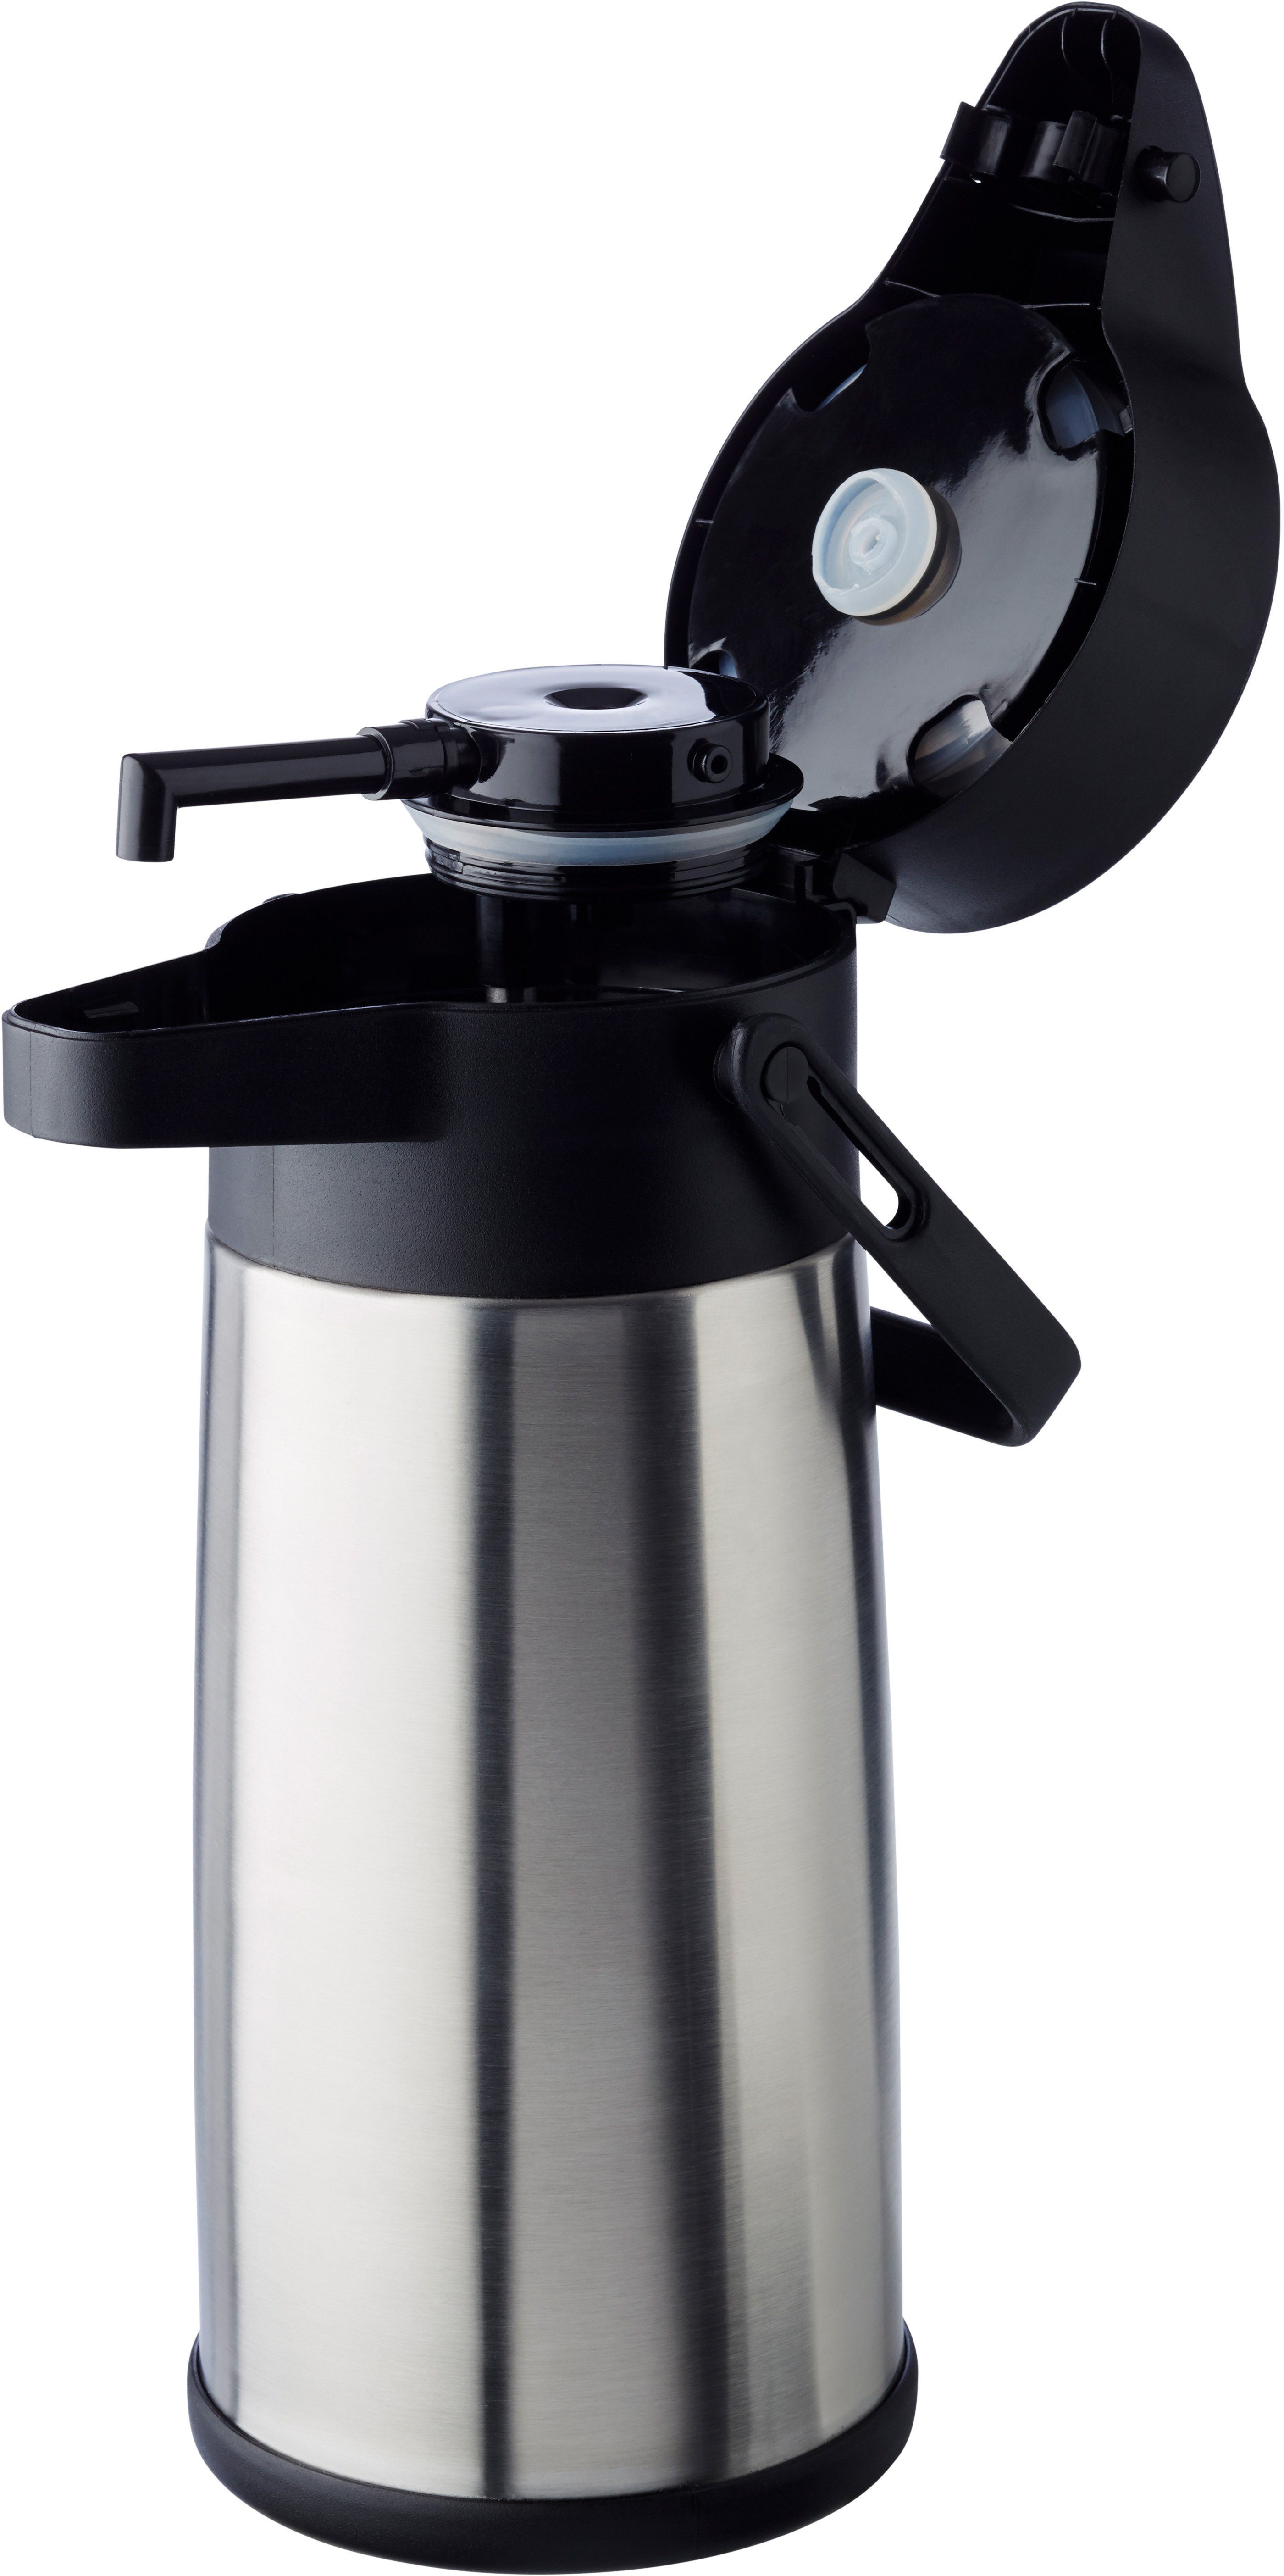 APS Pump-Isolierkanne Budget, Isolierung Dreh-Pumpknopf, doppelwandige Tassen 17 bis l, 2,2 für zu Kaffee